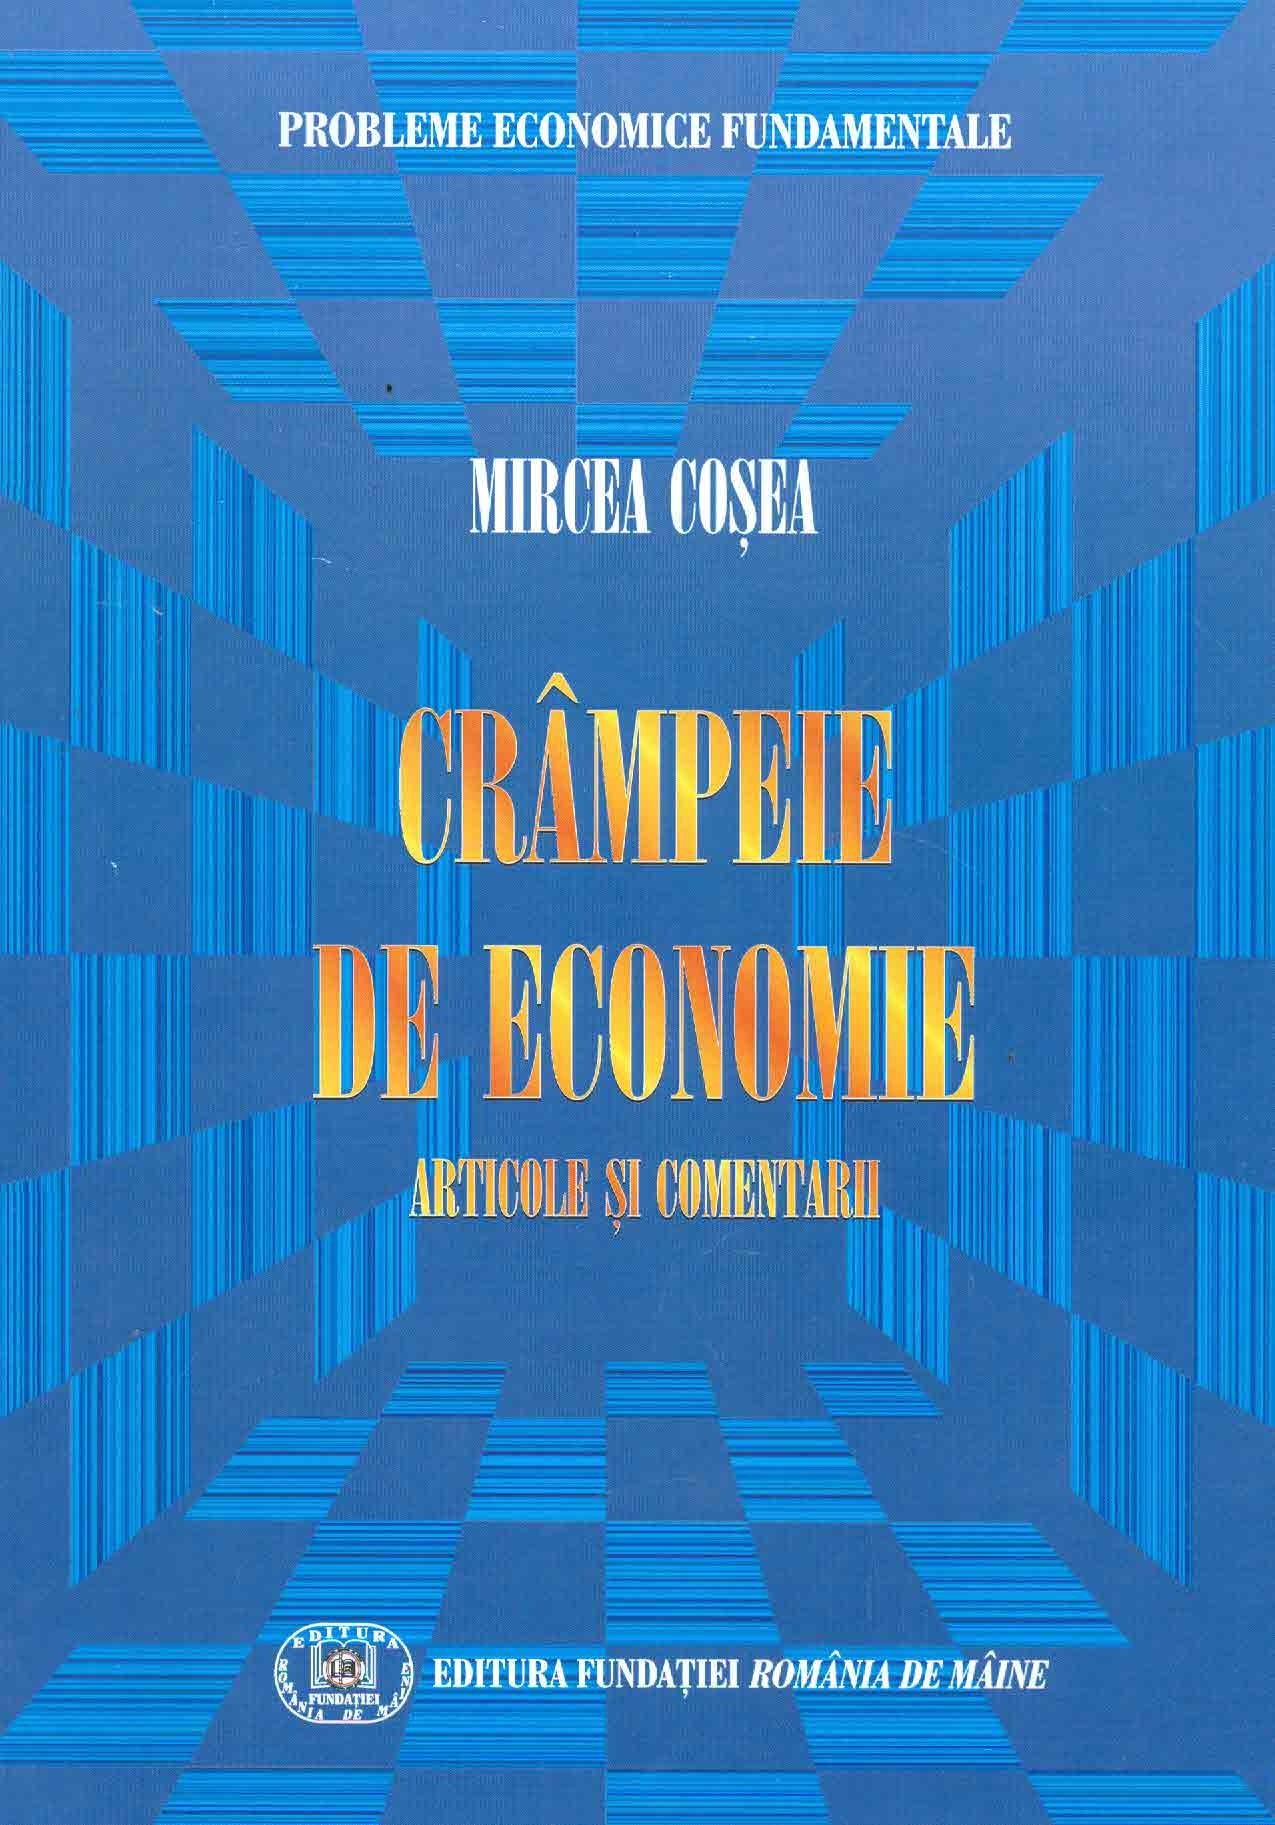 Crampeie de economie | Mircea Cosea carturesti.ro Business si economie